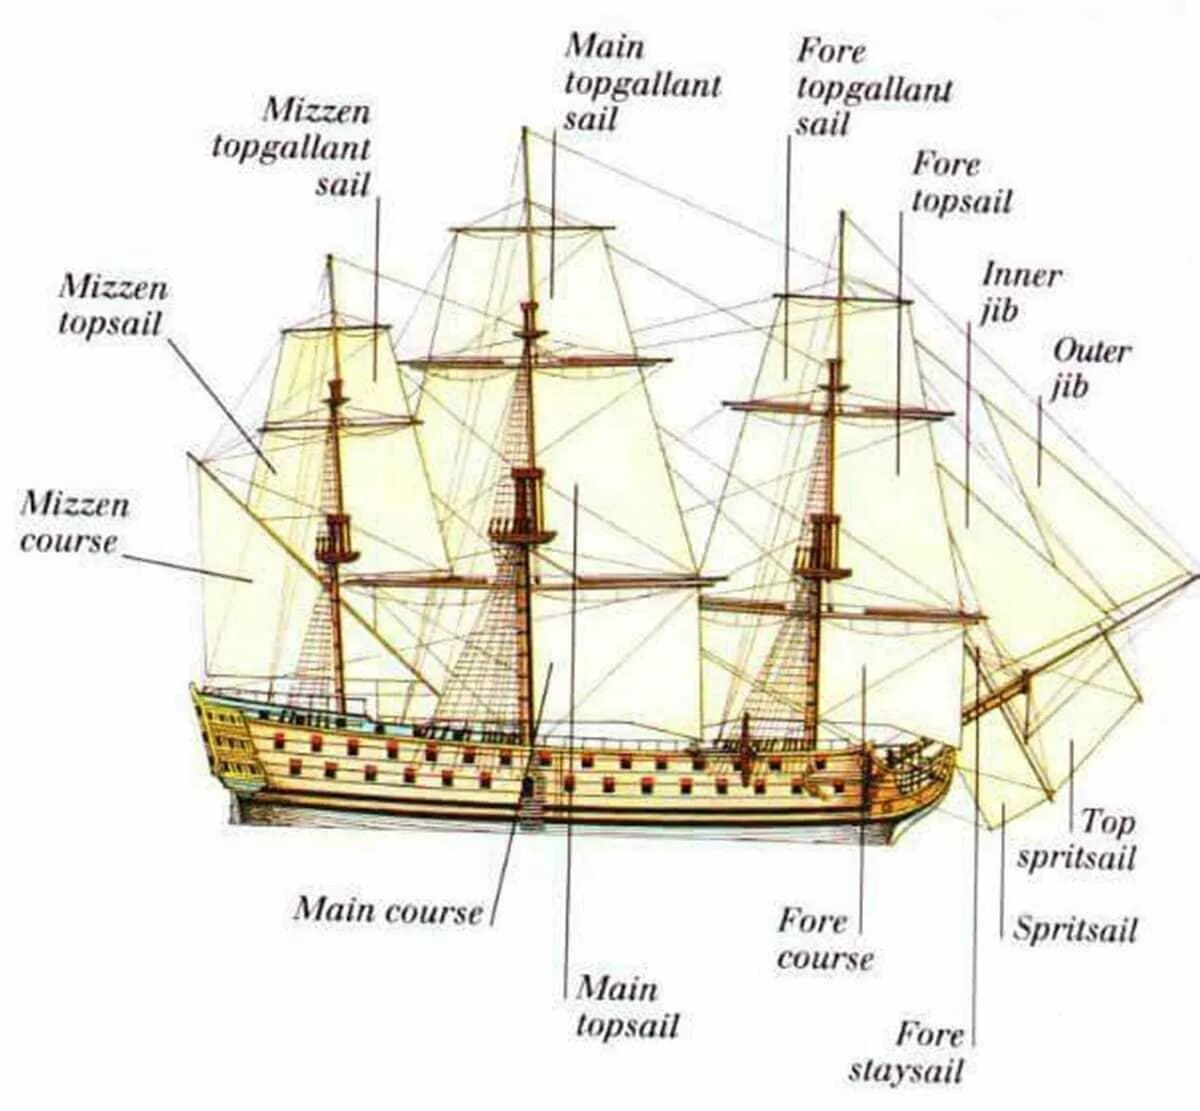 Название частей корабля. Строение парусного корабля 17 века. Классификация парусных кораблей 17 века. Части корабля названия. Детали парусного корабля.